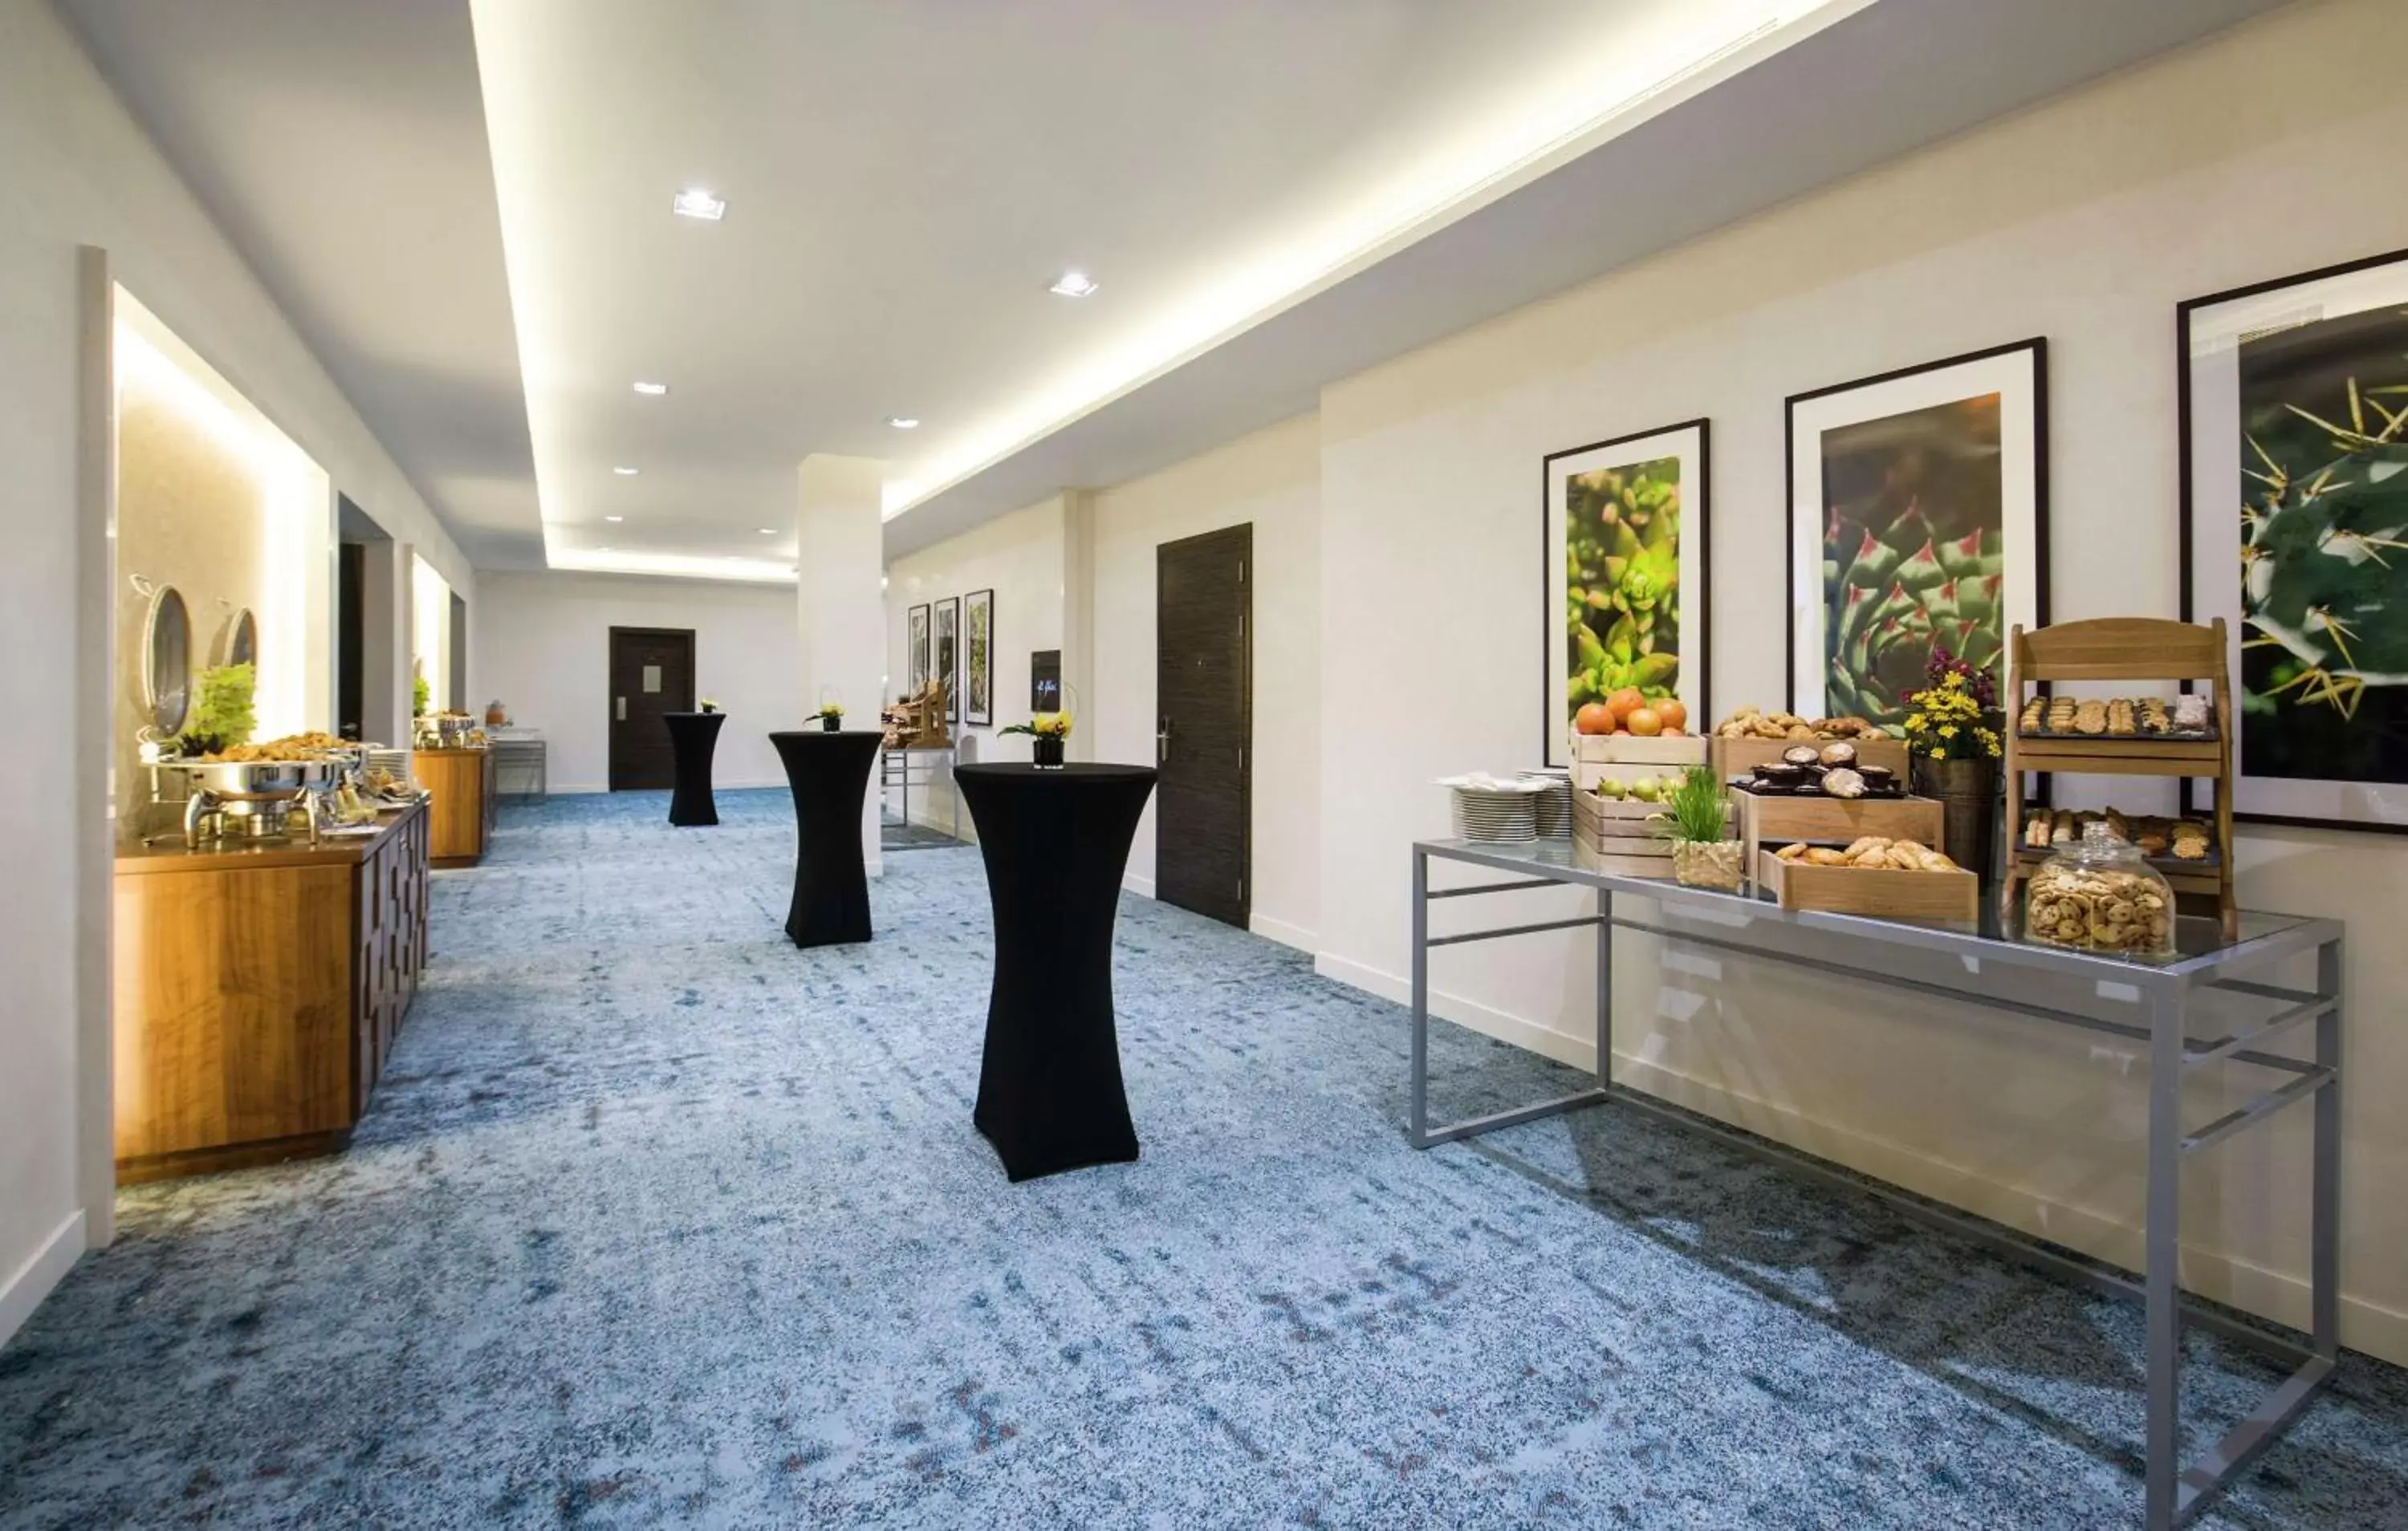 Banquet/Function facilities in Hilton Garden Inn Ras Al Khaimah